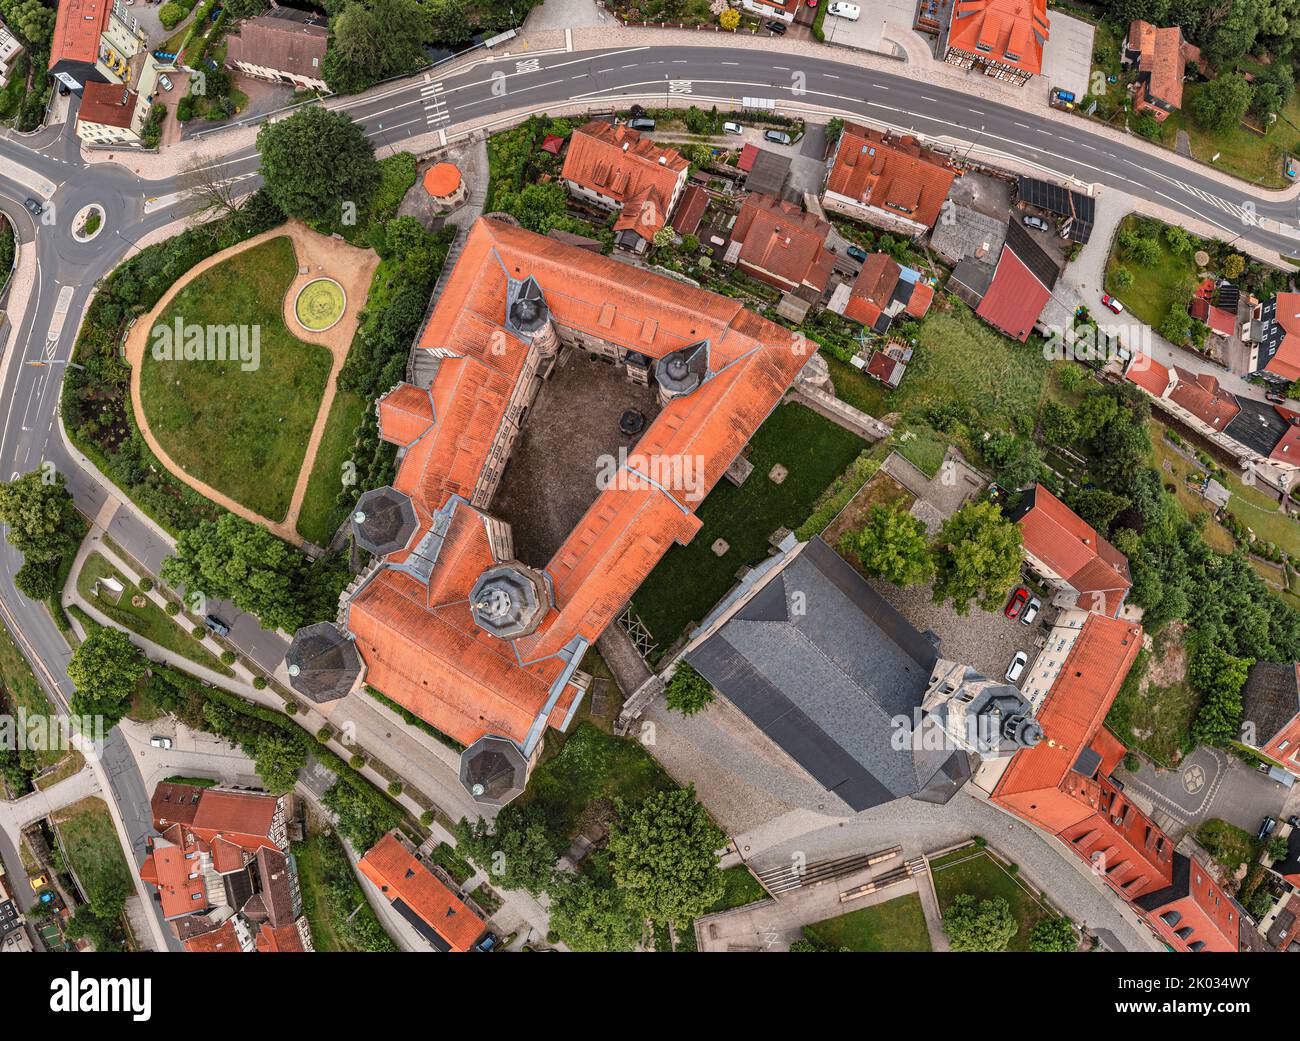 Germania, Turingia, Schleusingen, Castello di Bertholdsburg (Museo di Storia Naturale), chiesa cittadina di San Johannis, vista dall'alto, vista aerea Foto Stock